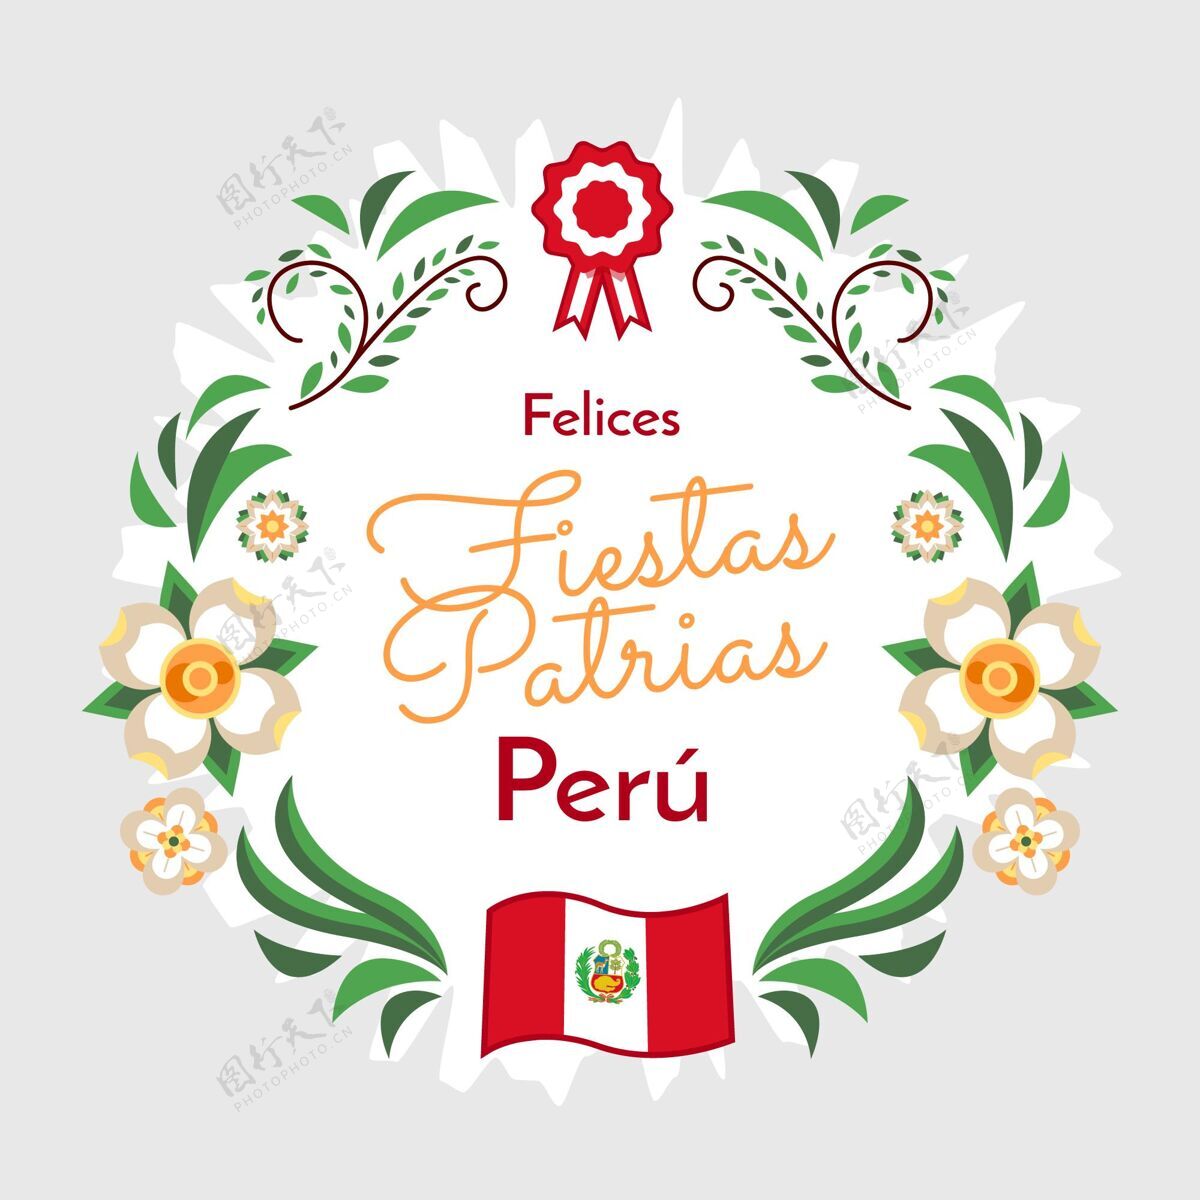 纪念平节帕特里亚斯秘鲁插画活动贺卡秘鲁国庆节